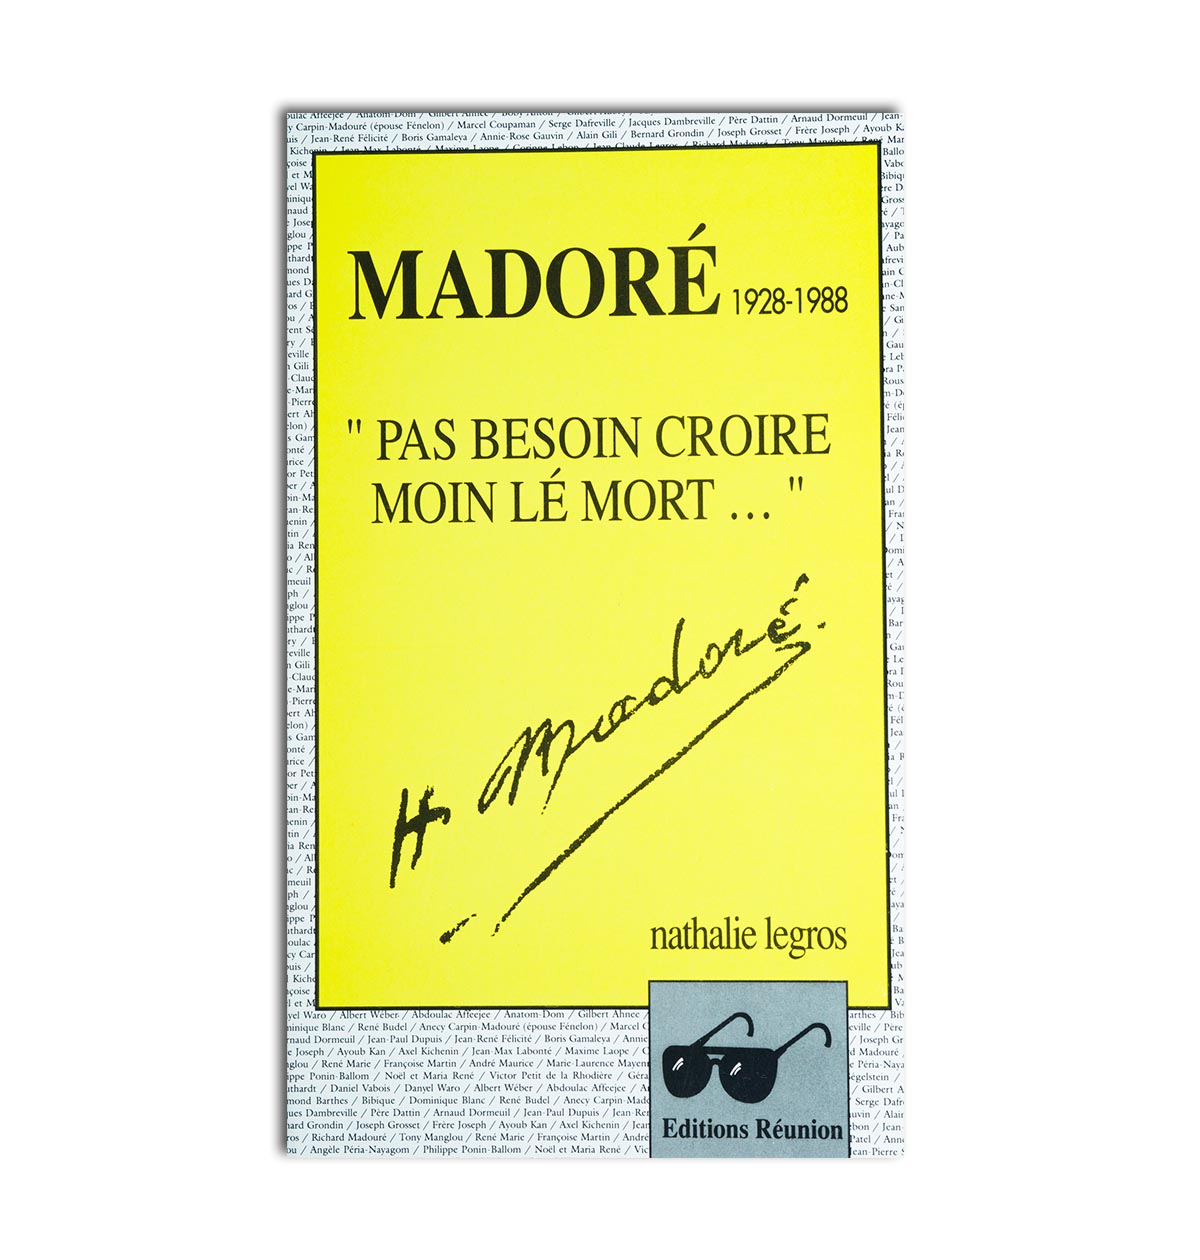 Madoré 1928-1988